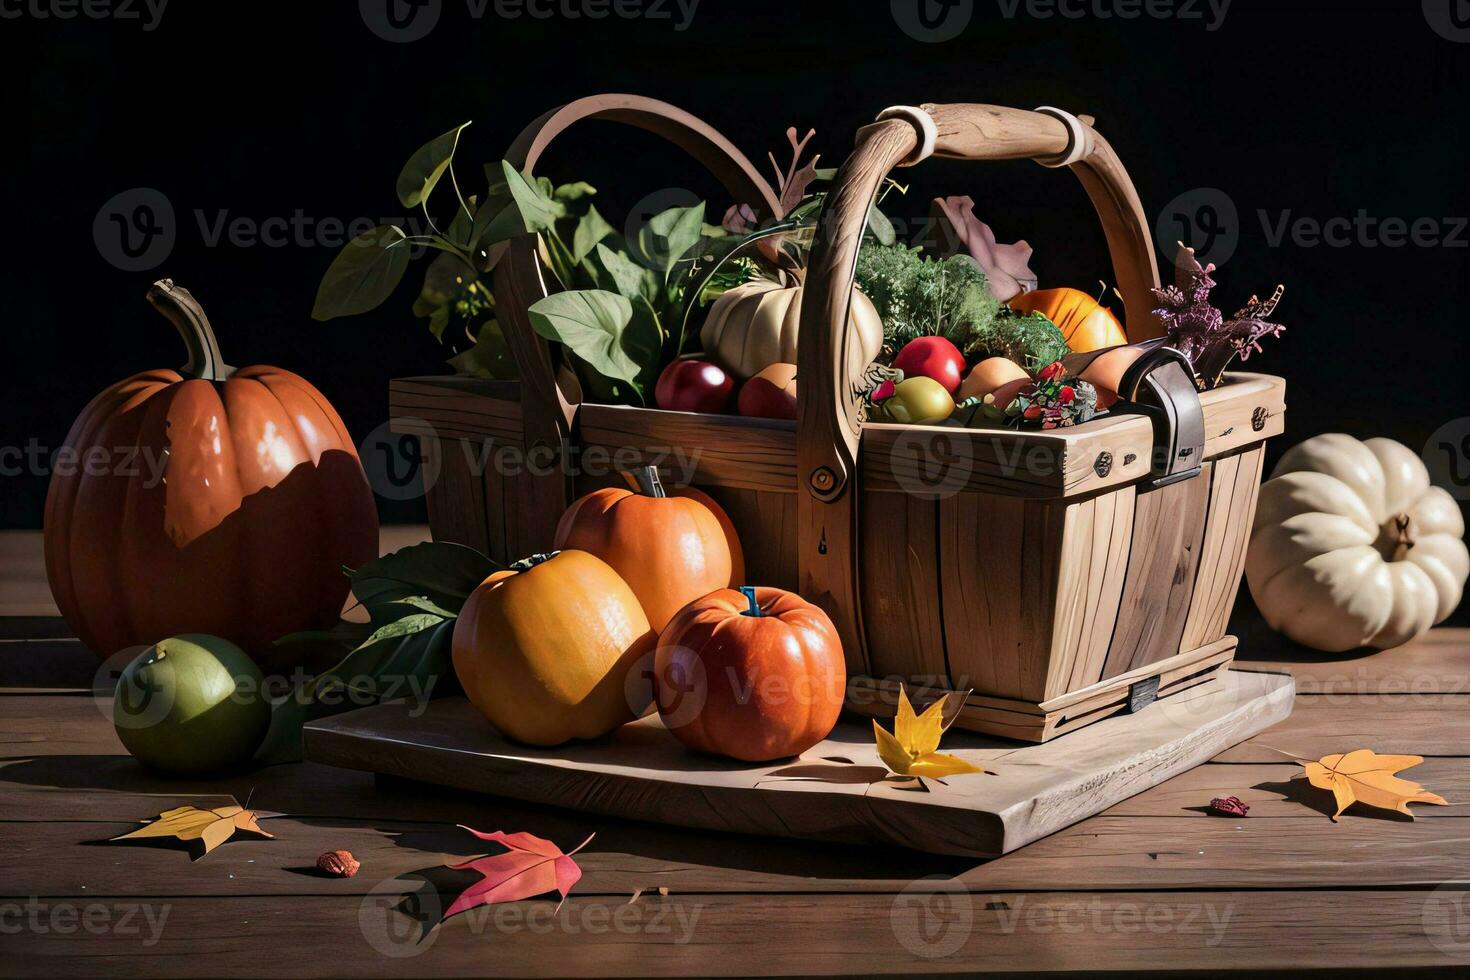 studio foto van de mand met herfst oogst groenten